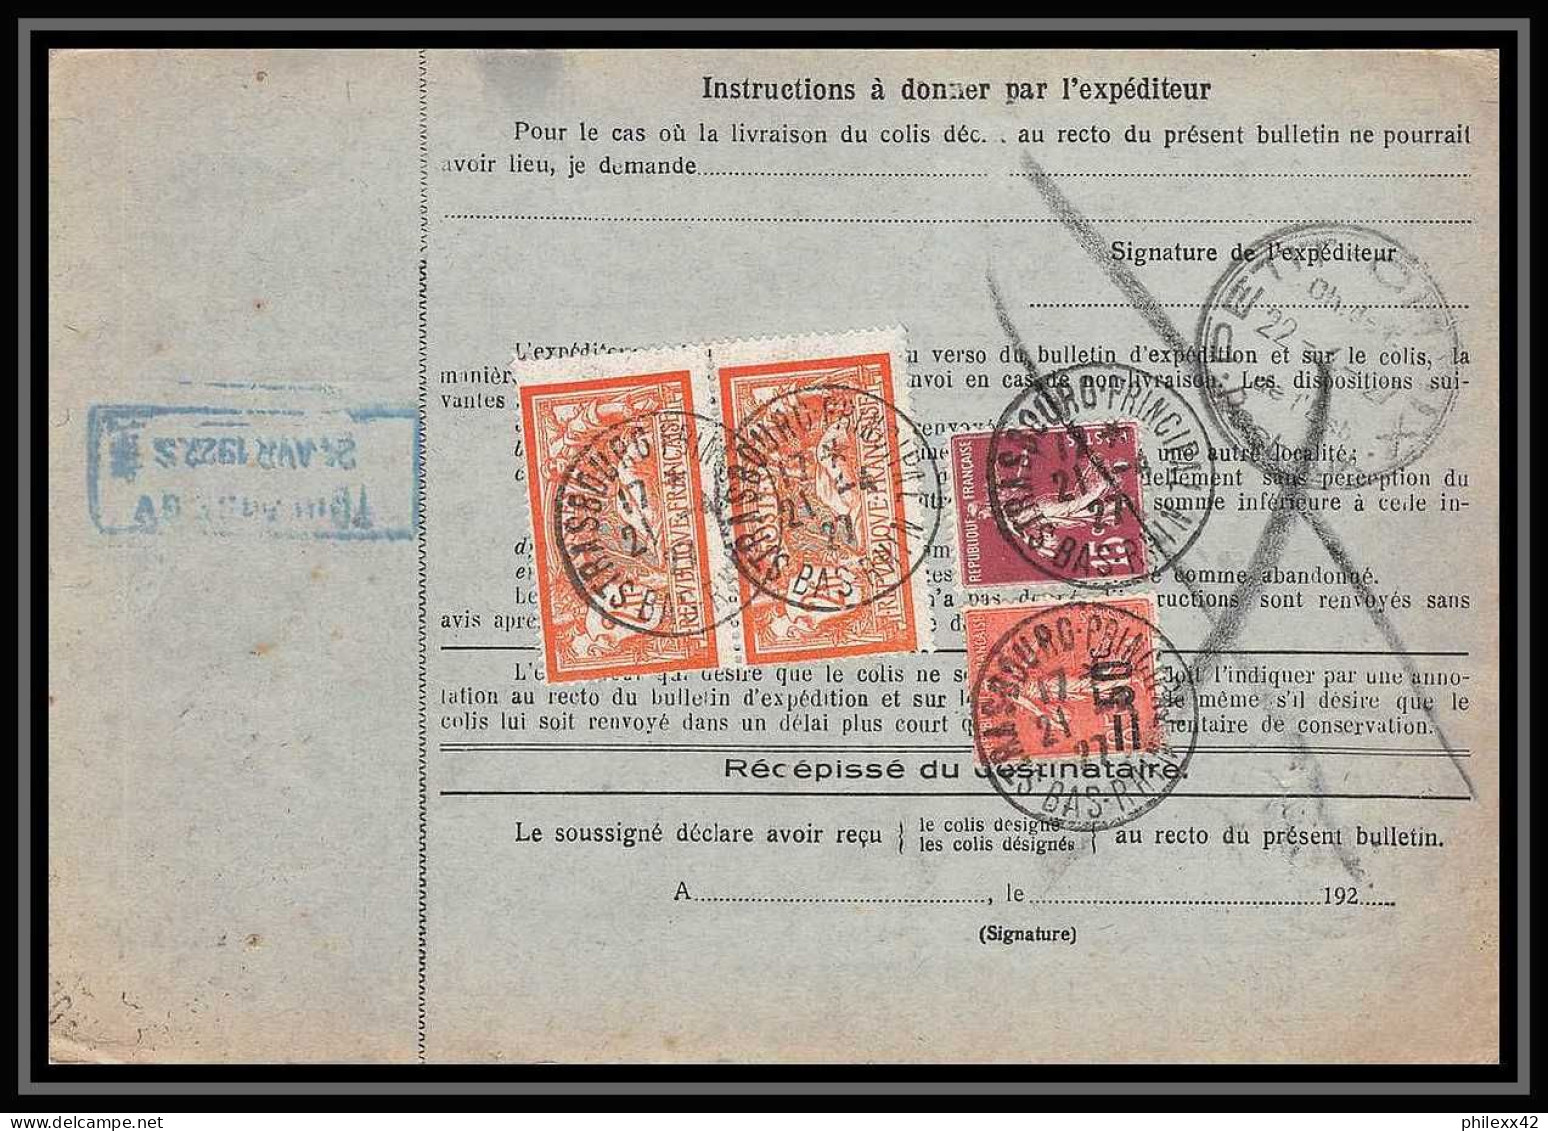 25007 Bulletin D'expédition France Colis Postaux Fiscal Haut Rhin 1927 Strasbourg Semeuse Merson 145 EN GARE - Covers & Documents